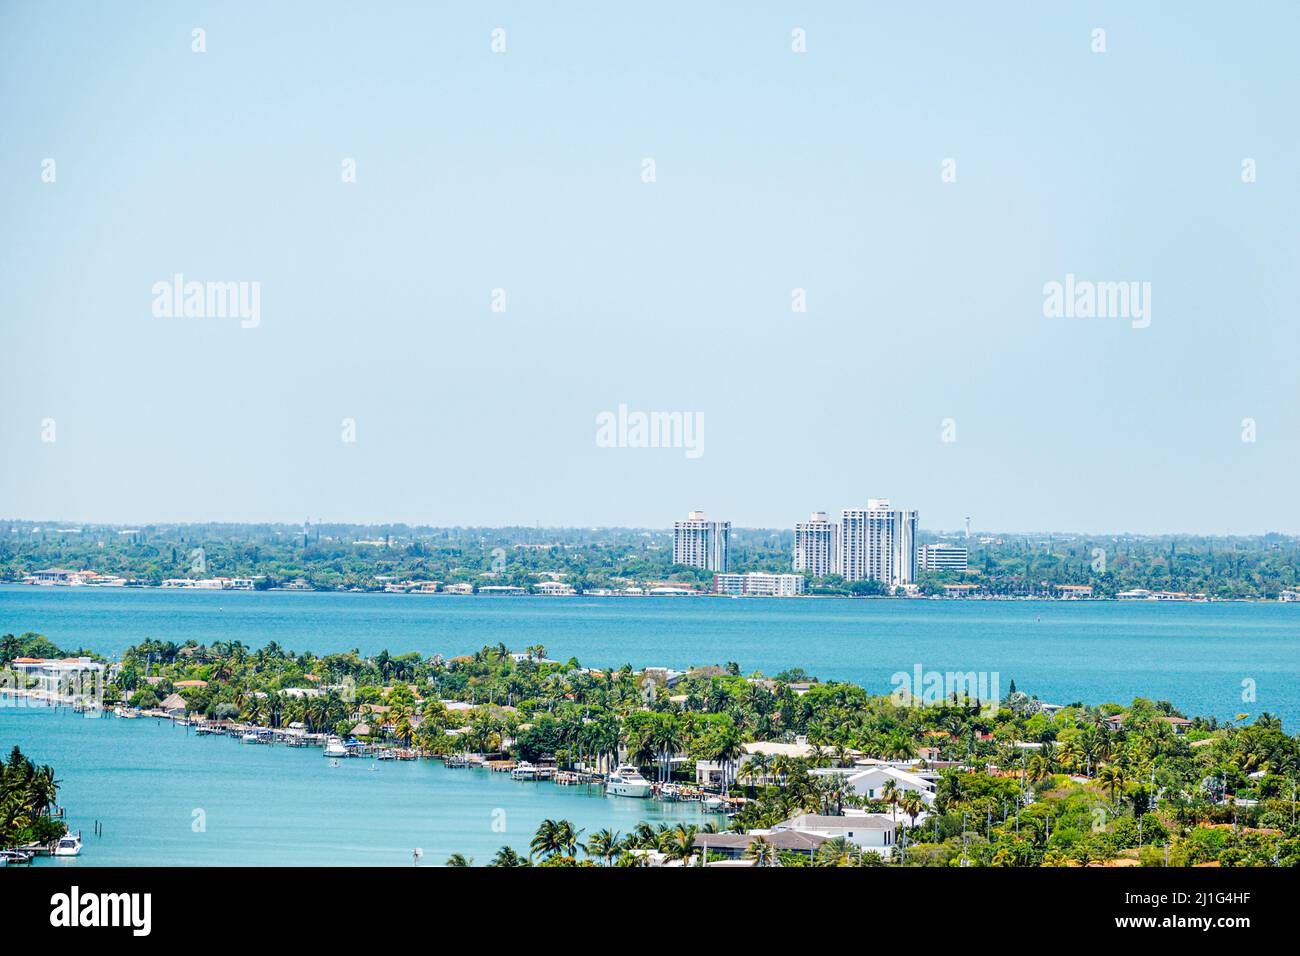 Miami Beach Florida, North Beach, Biscayne Bay Water, Selbstquarantäne zu Hause bleiben, weniger Verschmutzung, kein Smog, Coronavirus Covid-19 Pandemiekrankheit infektiös d Stockfoto